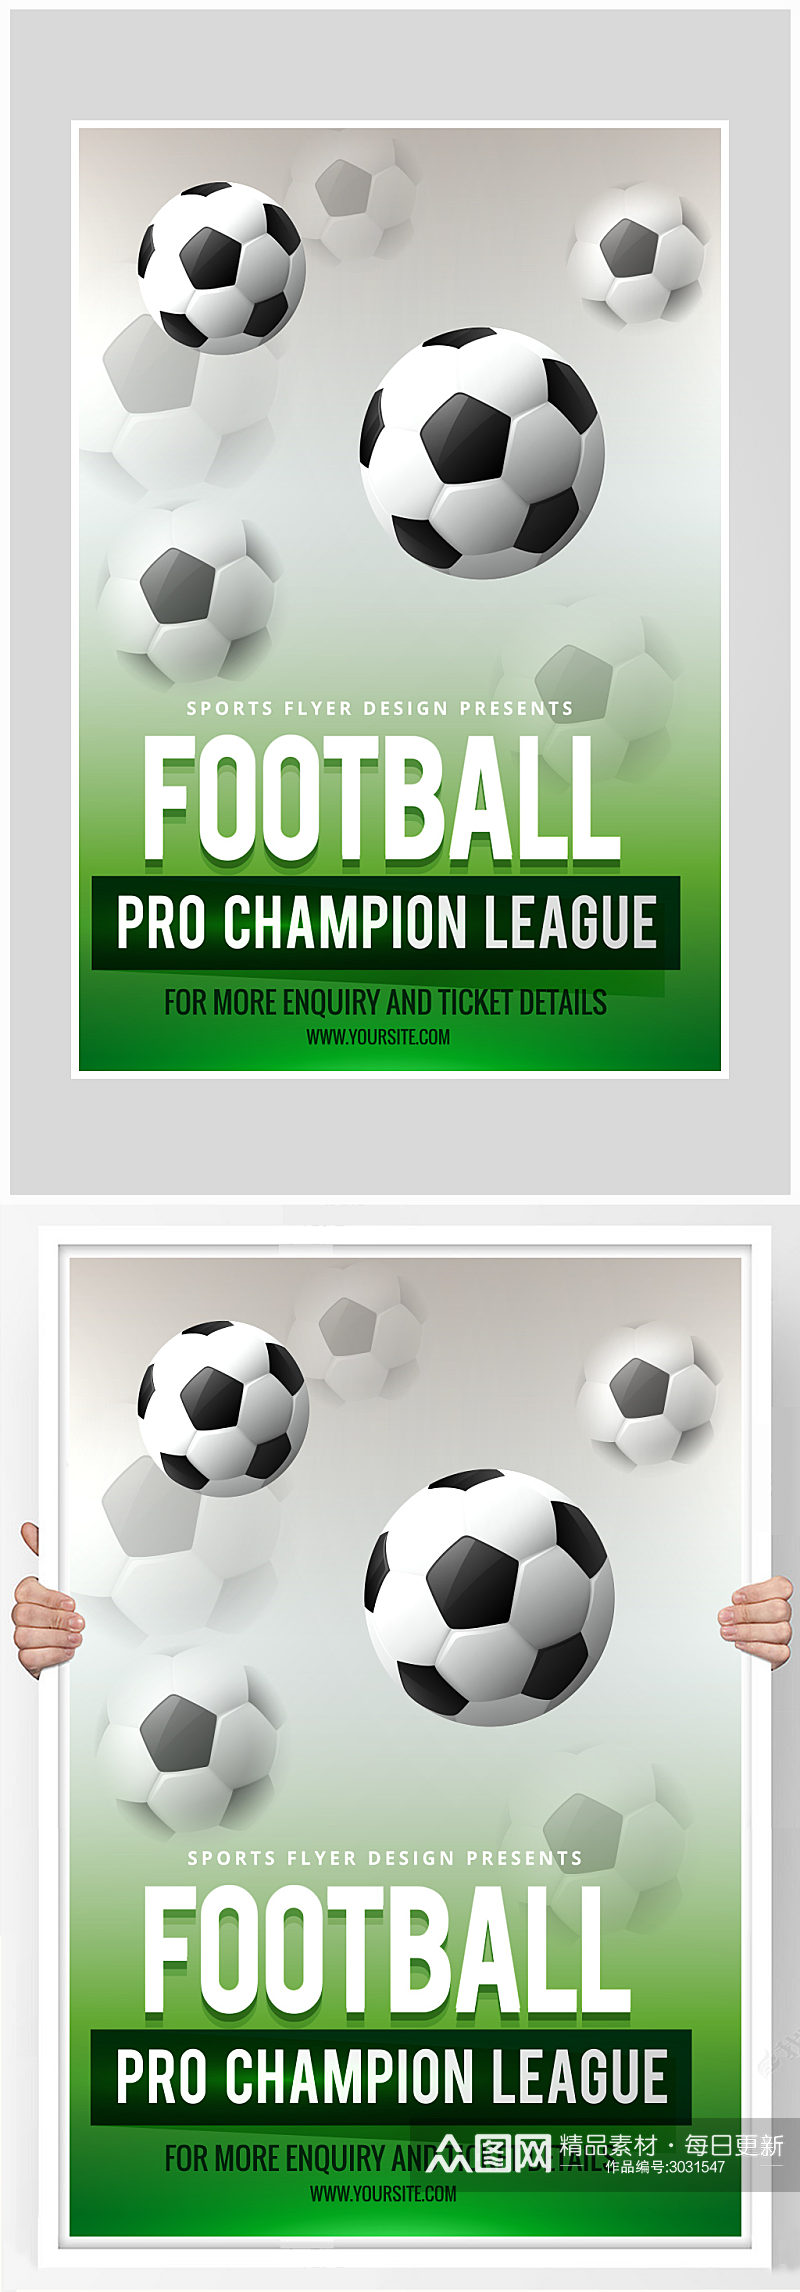 创意简约足球运动比赛海报设计素材